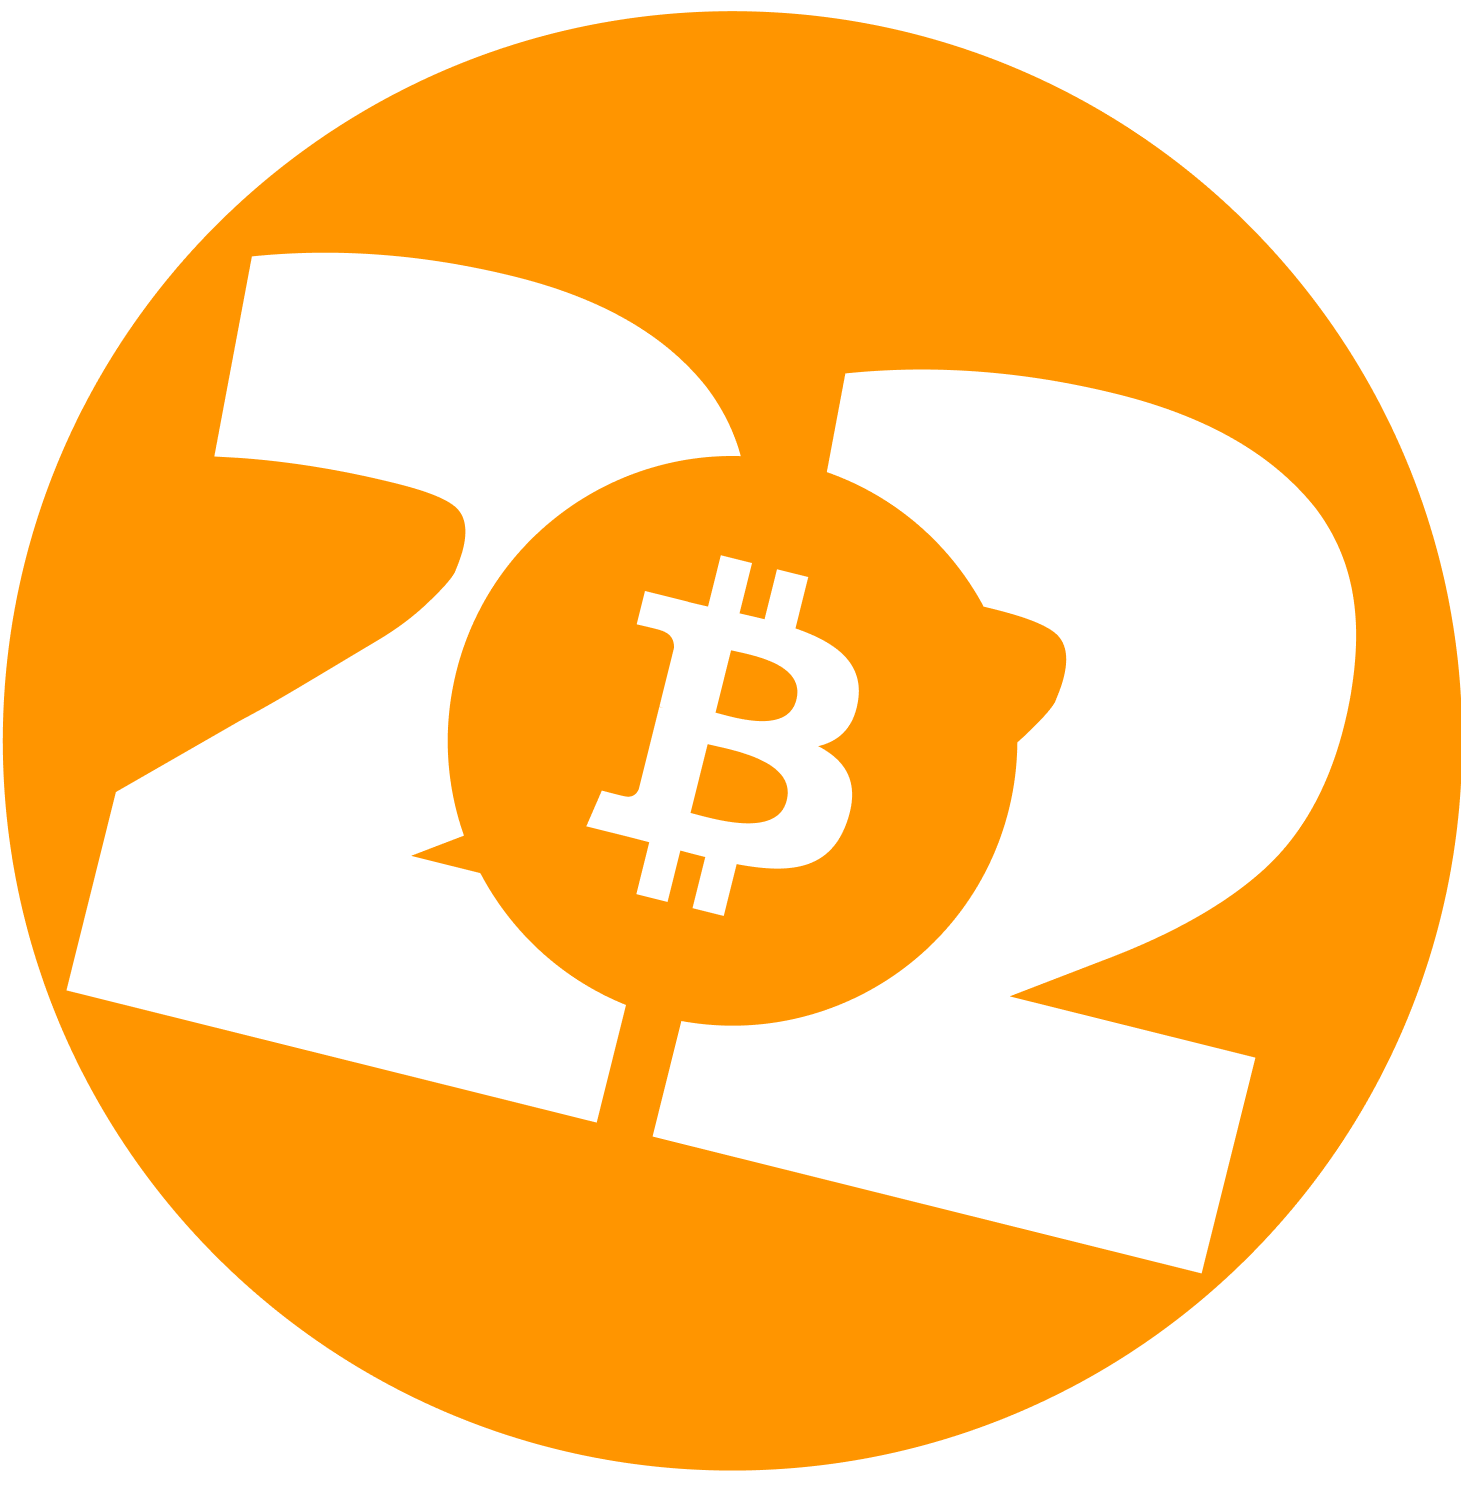 Blog - Bitcoin 2022 Conference Logo